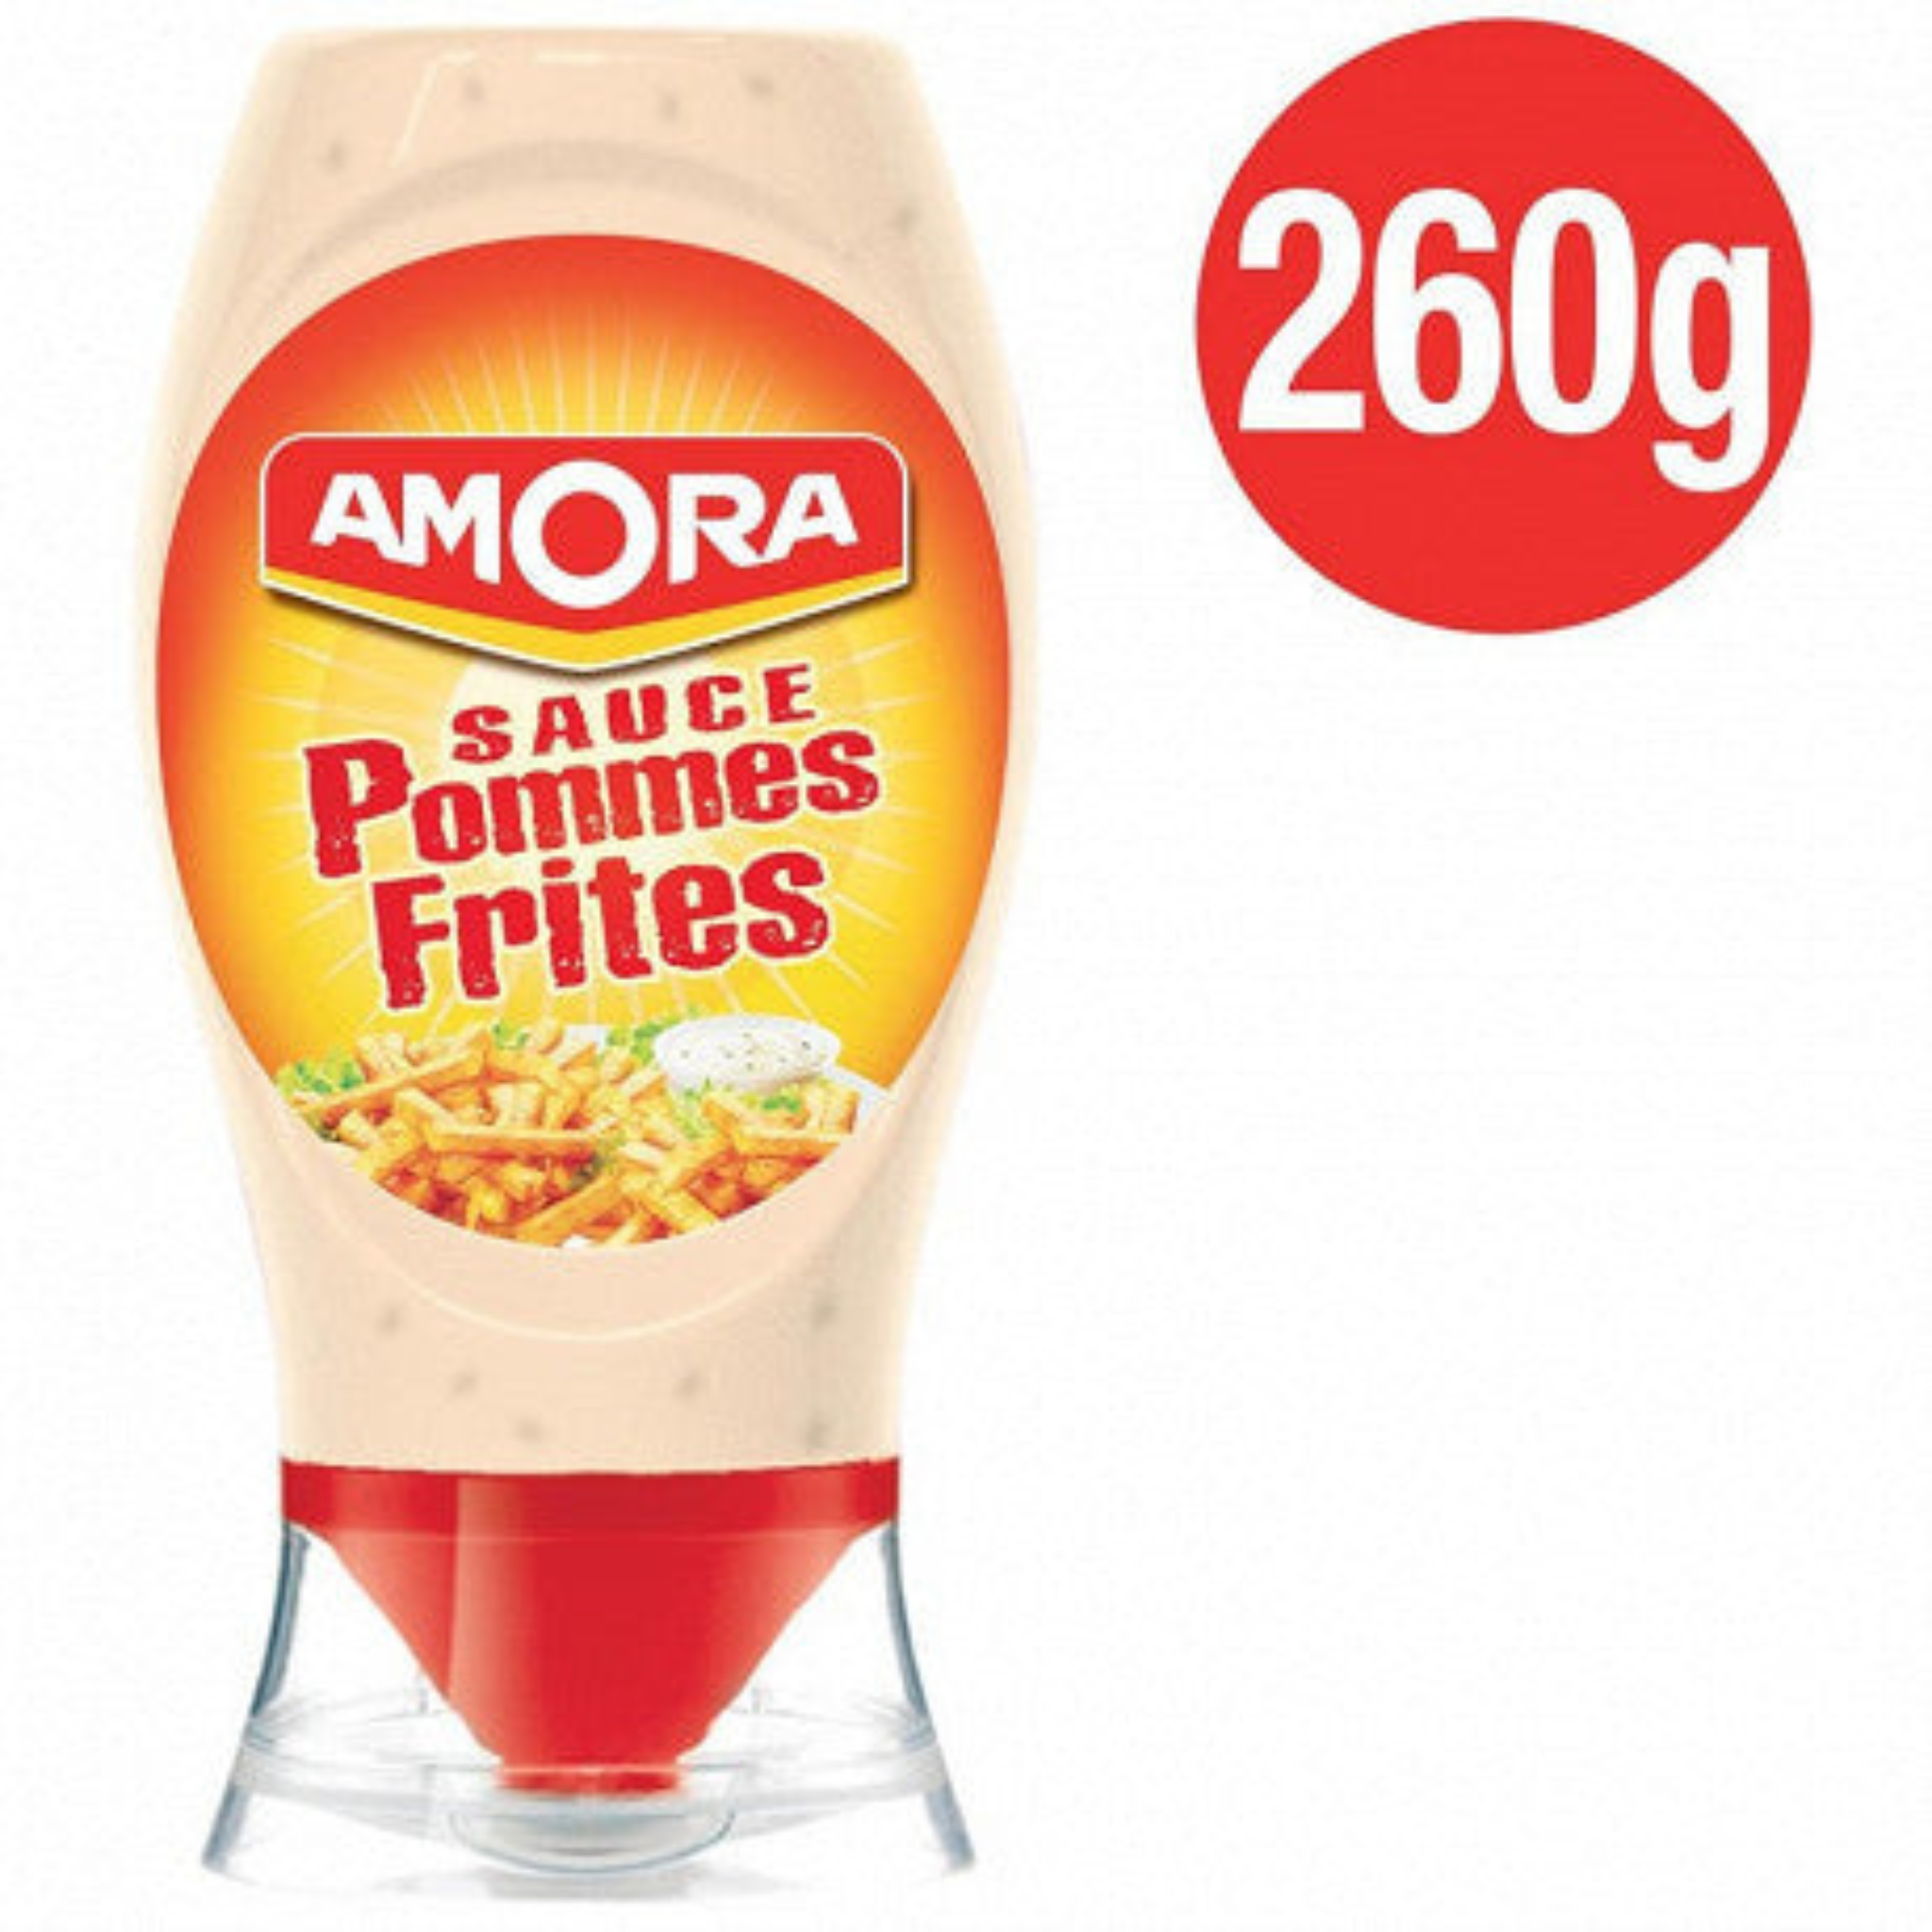 Avec les condiments Amora®, partagez plus qu'un repas ! Découvrez l'iconique sauce Pomme frites en flacon souple de 260 g ! Cette sauce savoureuse et réveillera vos papilles ! 